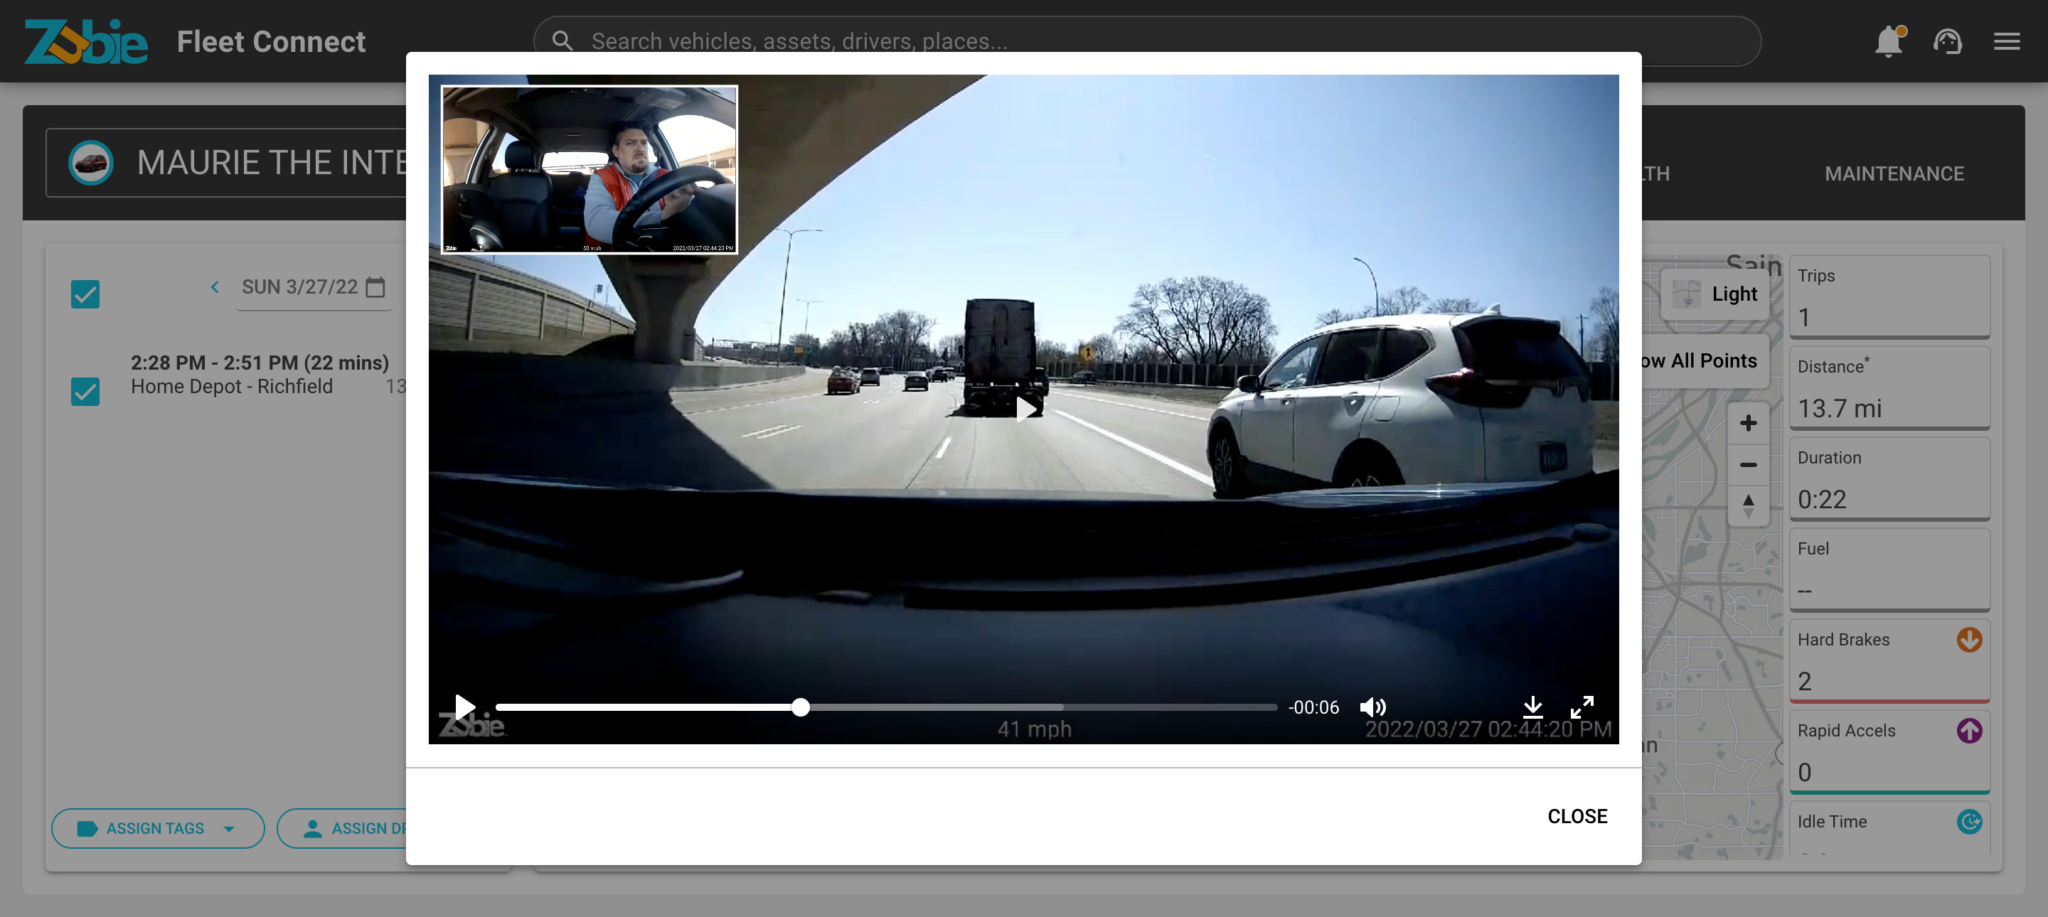 zubie fleet connect dashcam driver & street view